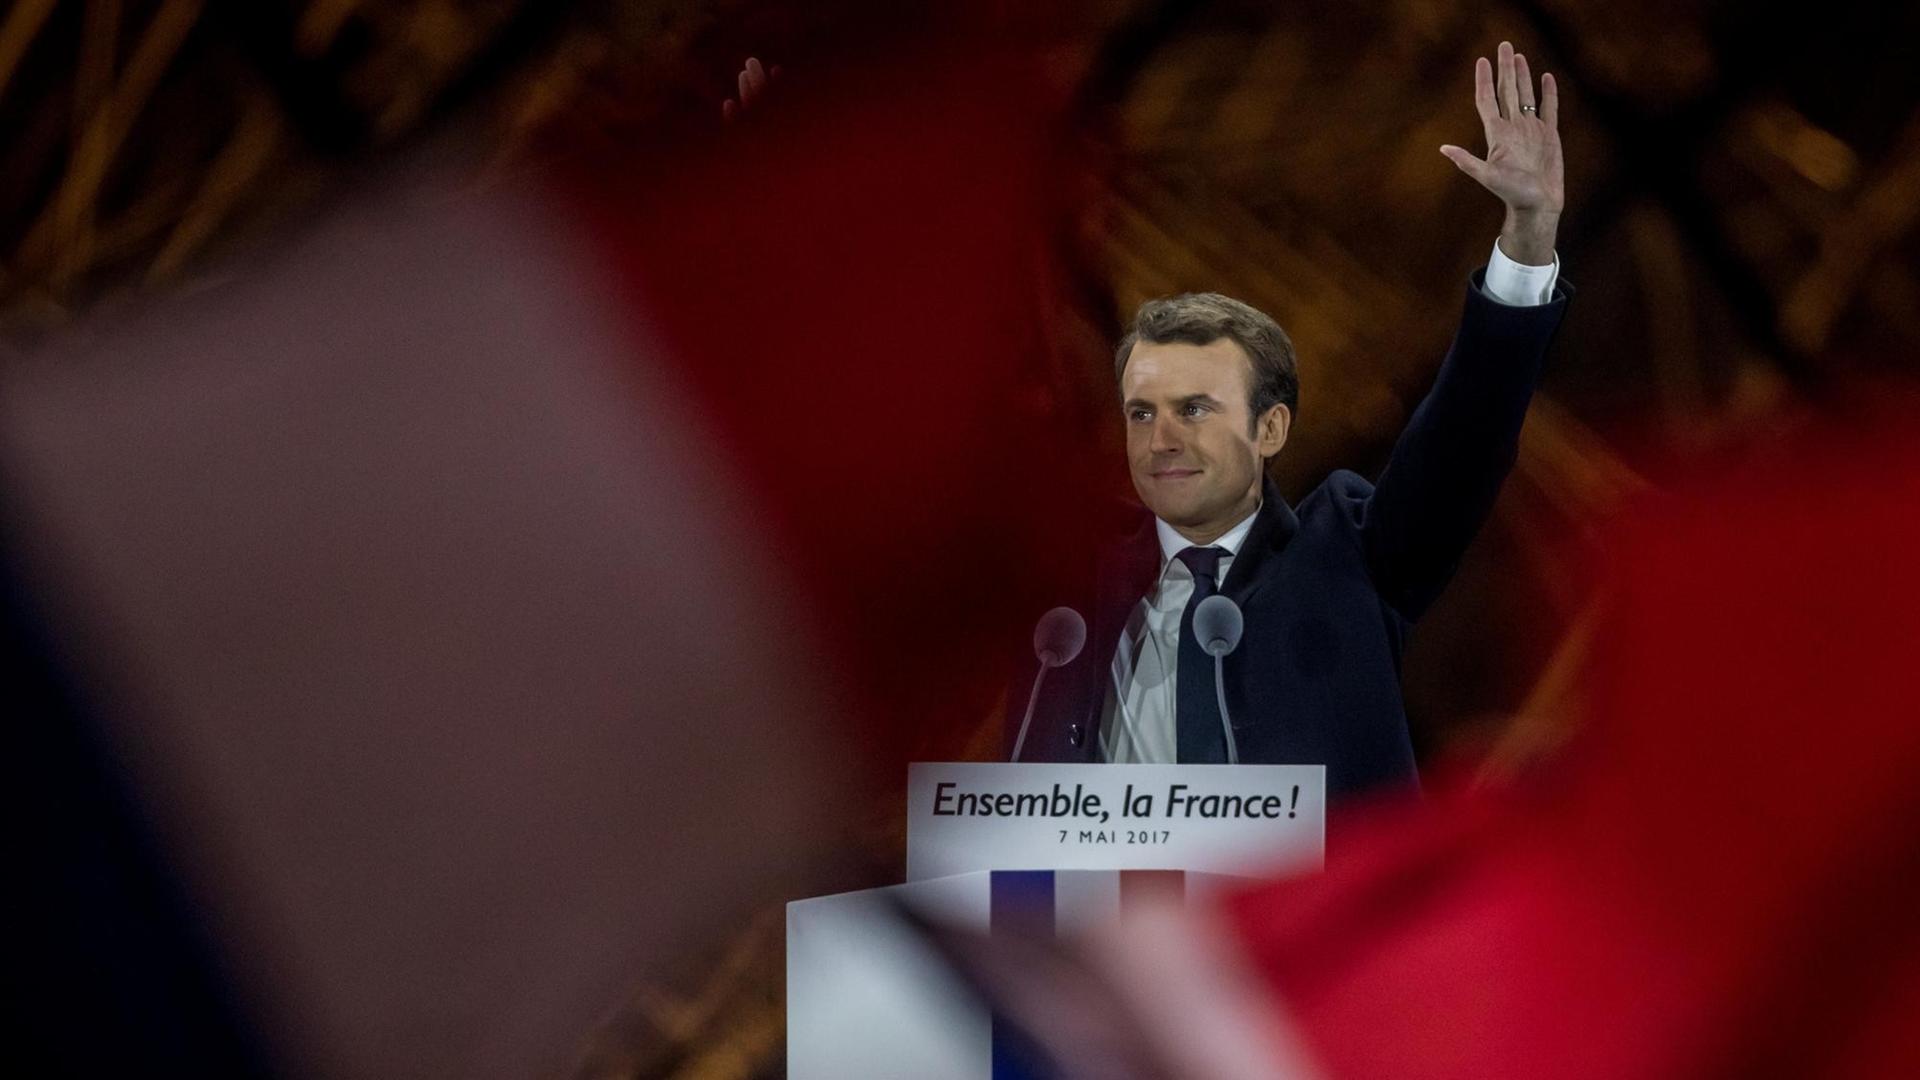 Emanuel Macron, der neugewählte Präsident Frankreichs jubelt am 07.05.2017 in Paris, Frankreich, auf der Bühne vor dem Louvre seinen Anhängern zu. Macron konnte die Stichwahl um das Präsidentenamt in Frankreich gegen Le Pen von der Front National für sich entscheiden.